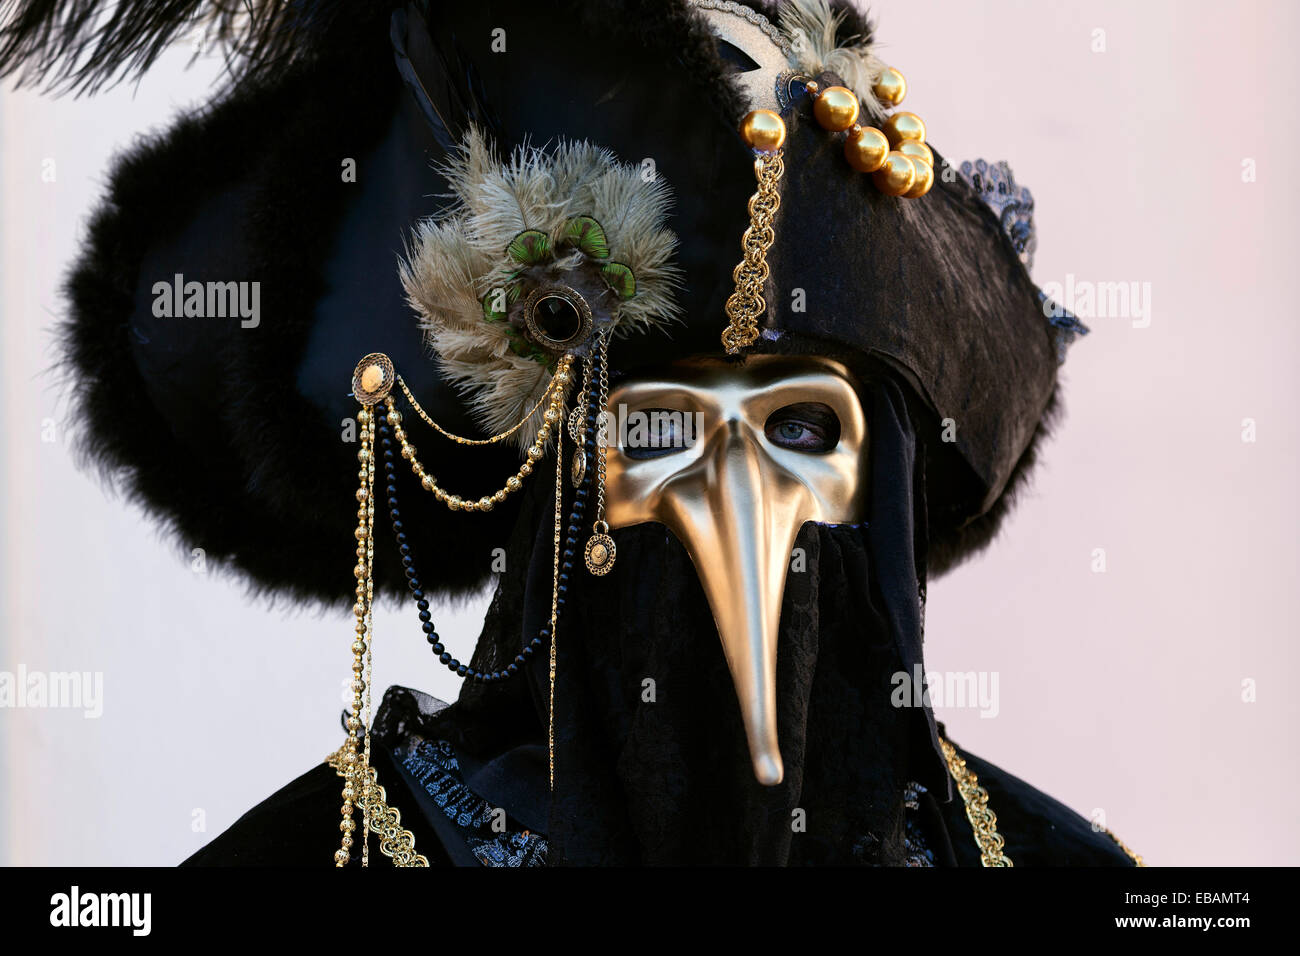 Beak mask hi-res stock photography images - Alamy